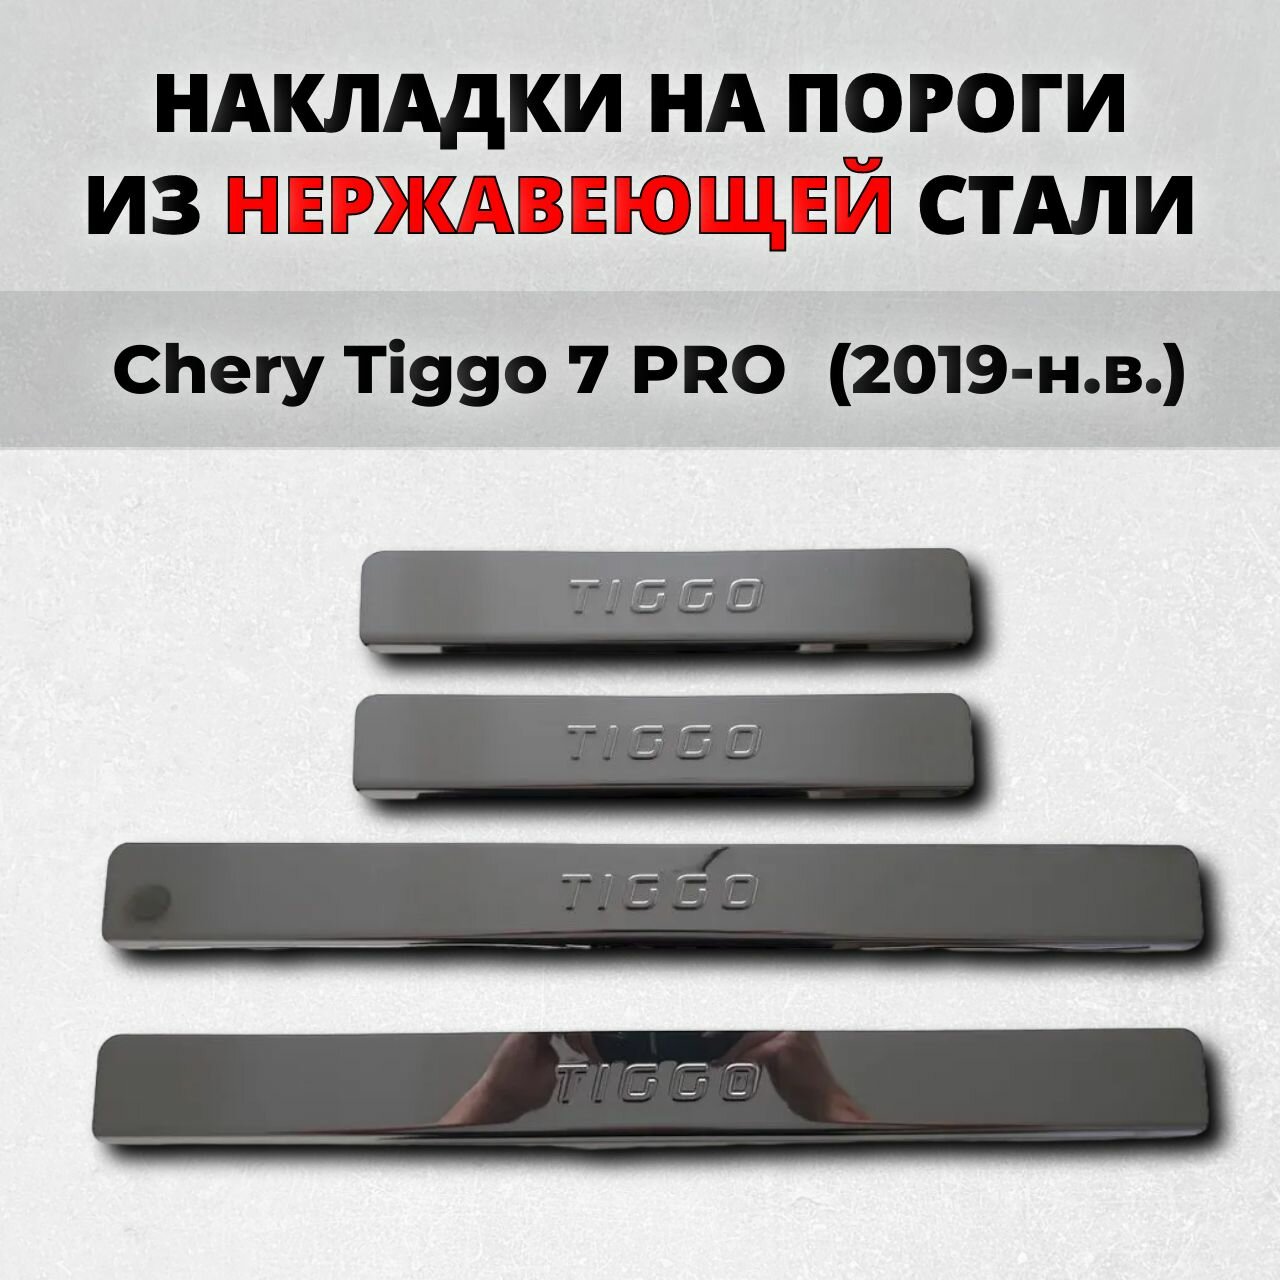 Накладки на пороги Чери Тигго 7 про 2019-н. в. из нержавеющей стали CHERY Tiggo 7 PRO